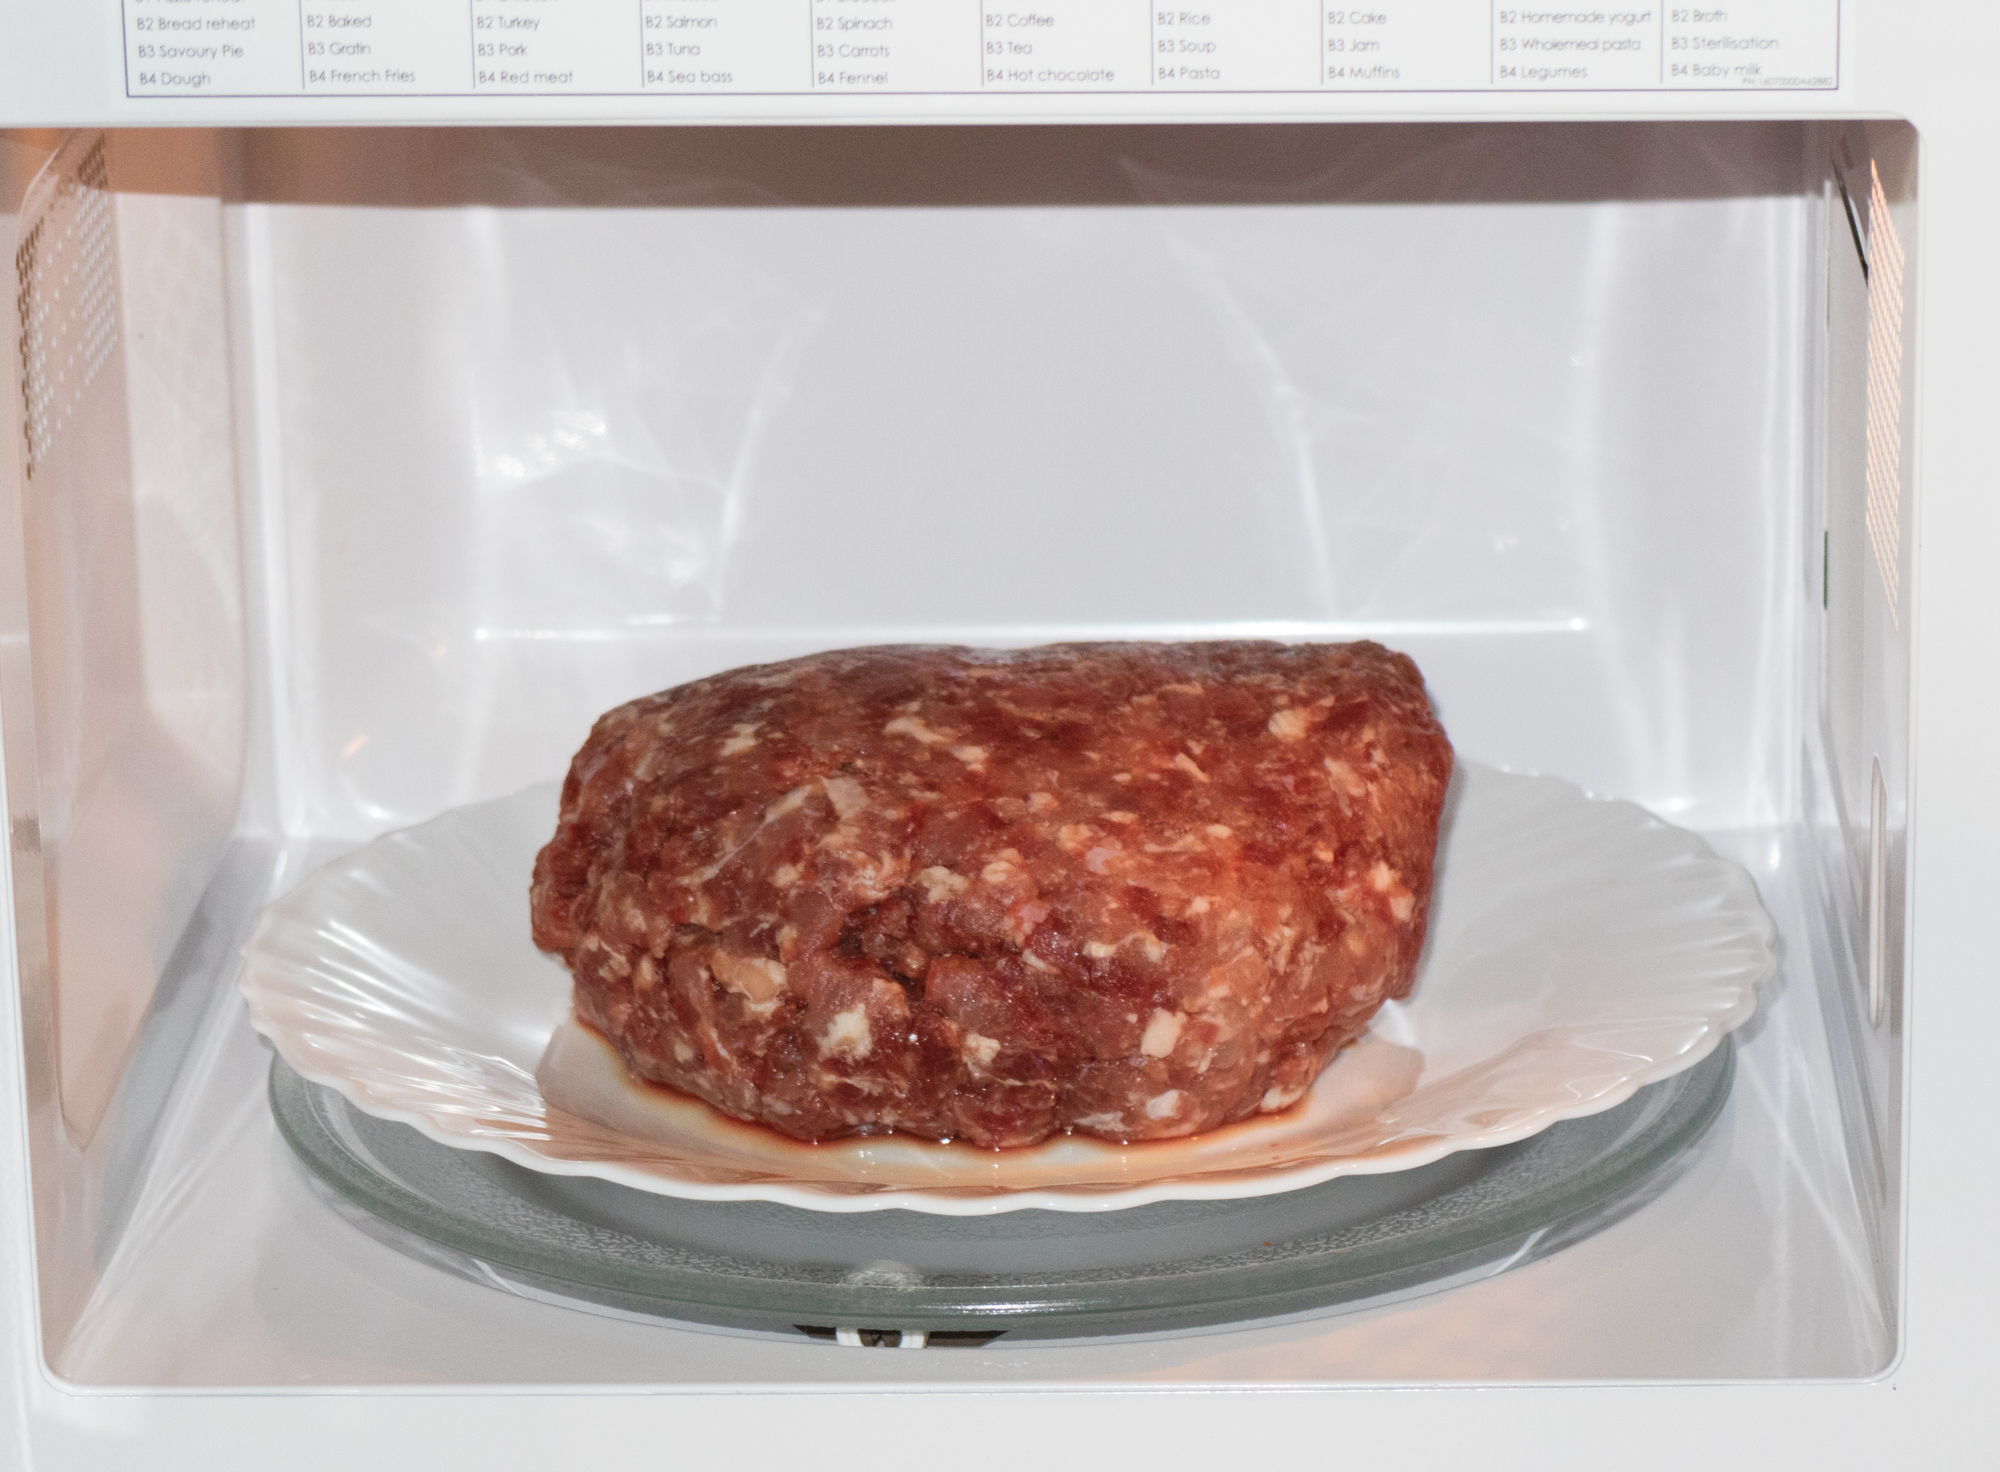 Как быстро разморозить мясо и фарш в микроволновке в домашних условиях, разморозка курицы